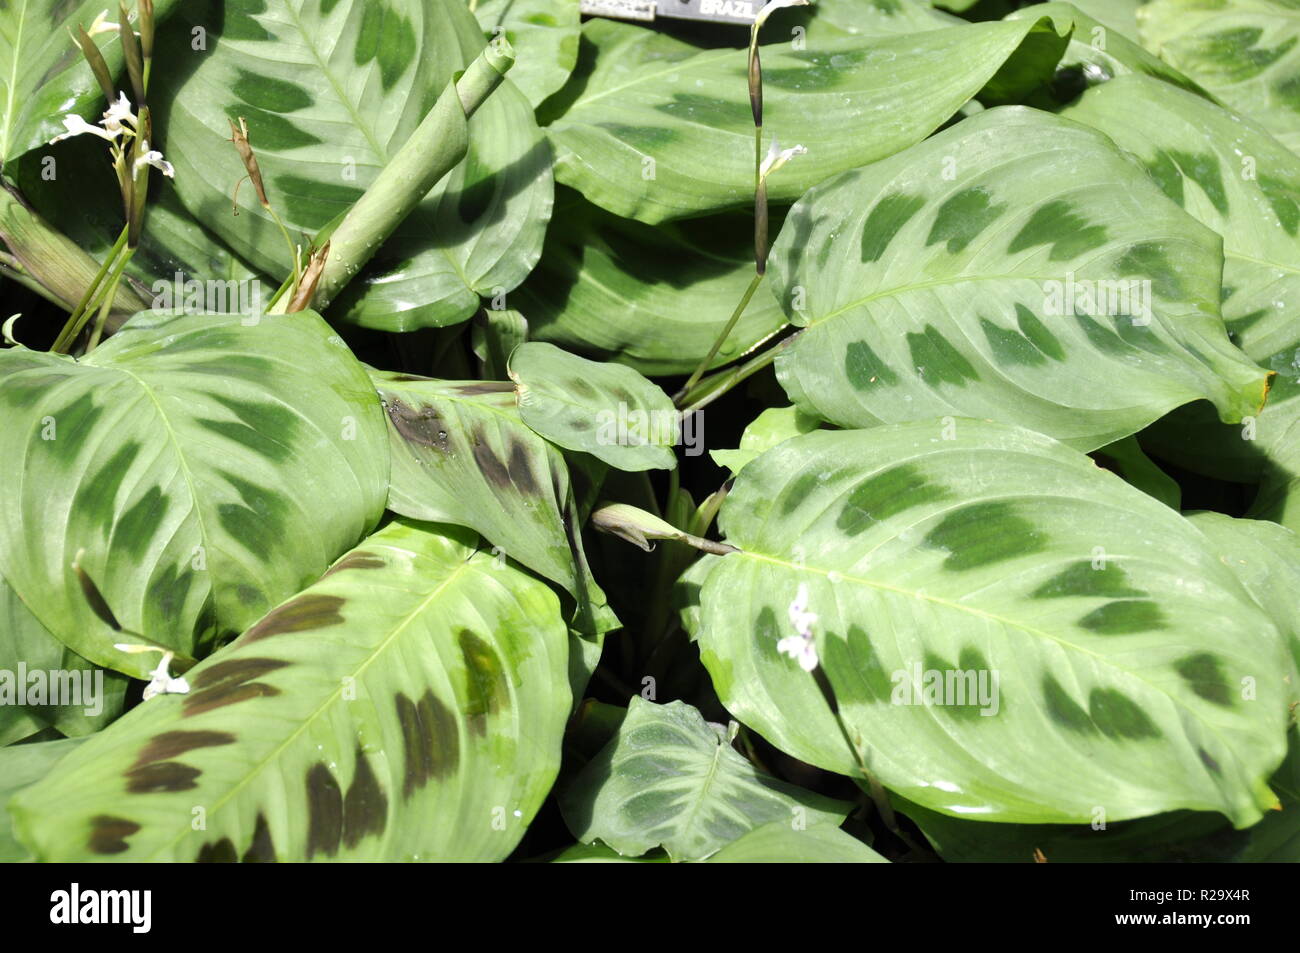 Foliage from Green prayers plant Maranta leuconeura kerchoveana Stock Photo